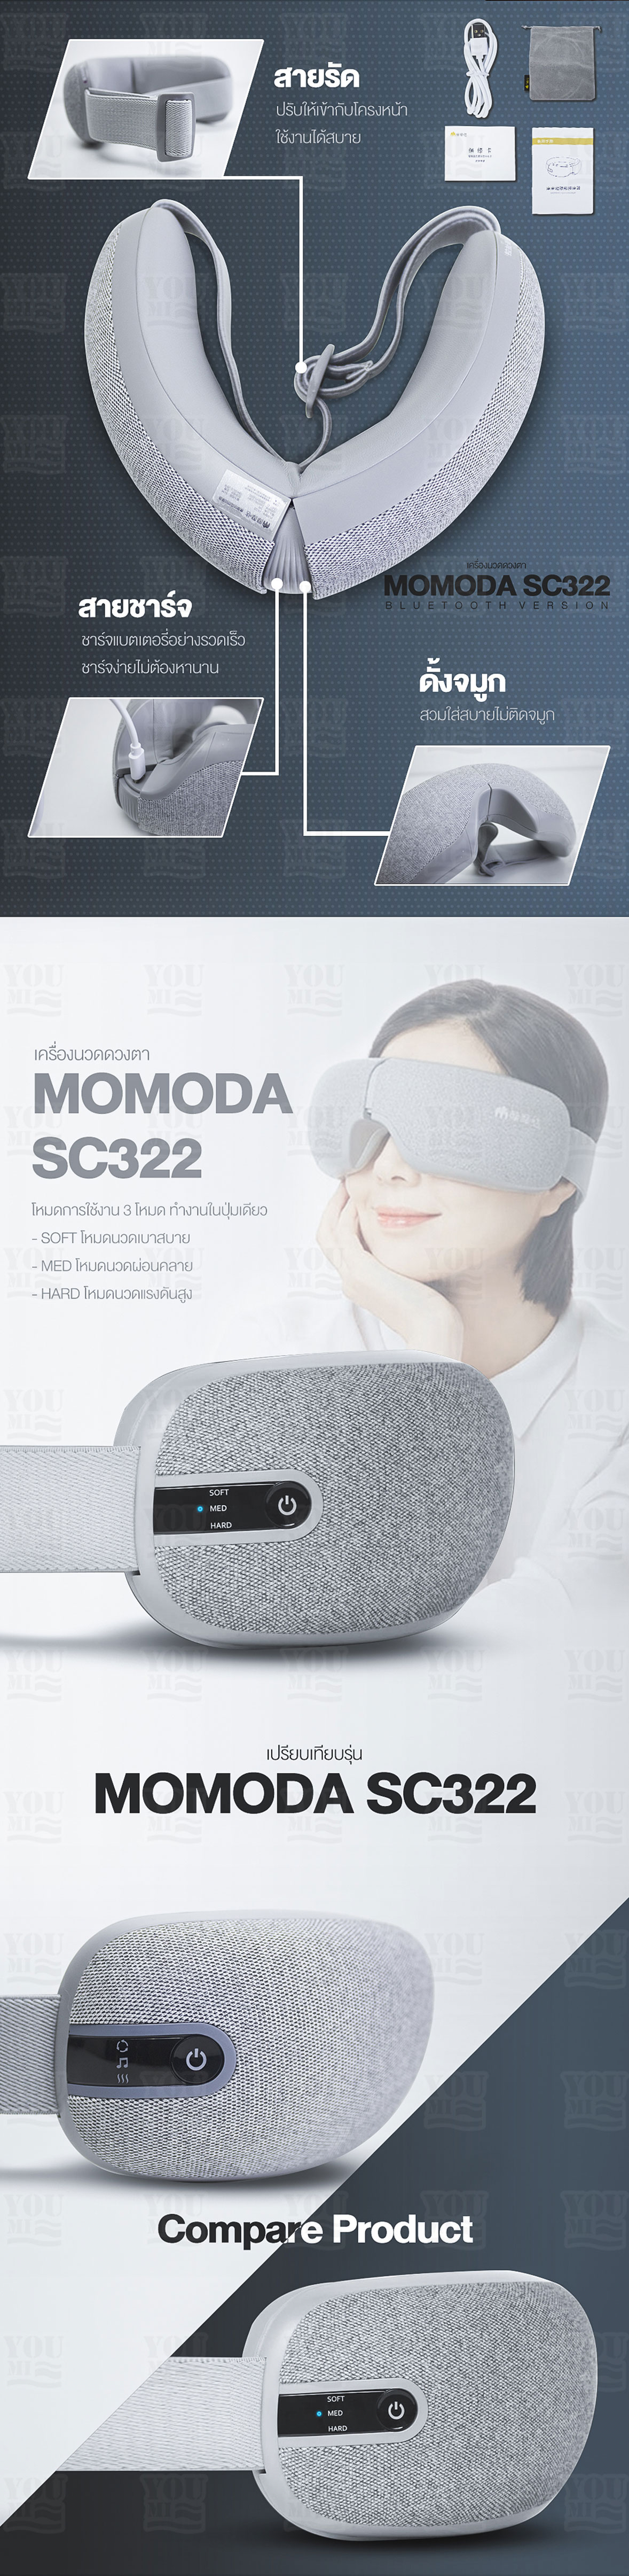 มุมมองเพิ่มเติมของสินค้า Momoda Eye Electric Massager เครื่องนวด เครื่องนวดตา ผ่อนคลายกล้ามเนื้อบริเวณตาด้วยระบบการสั่น และประคบร้อน ที่นวด